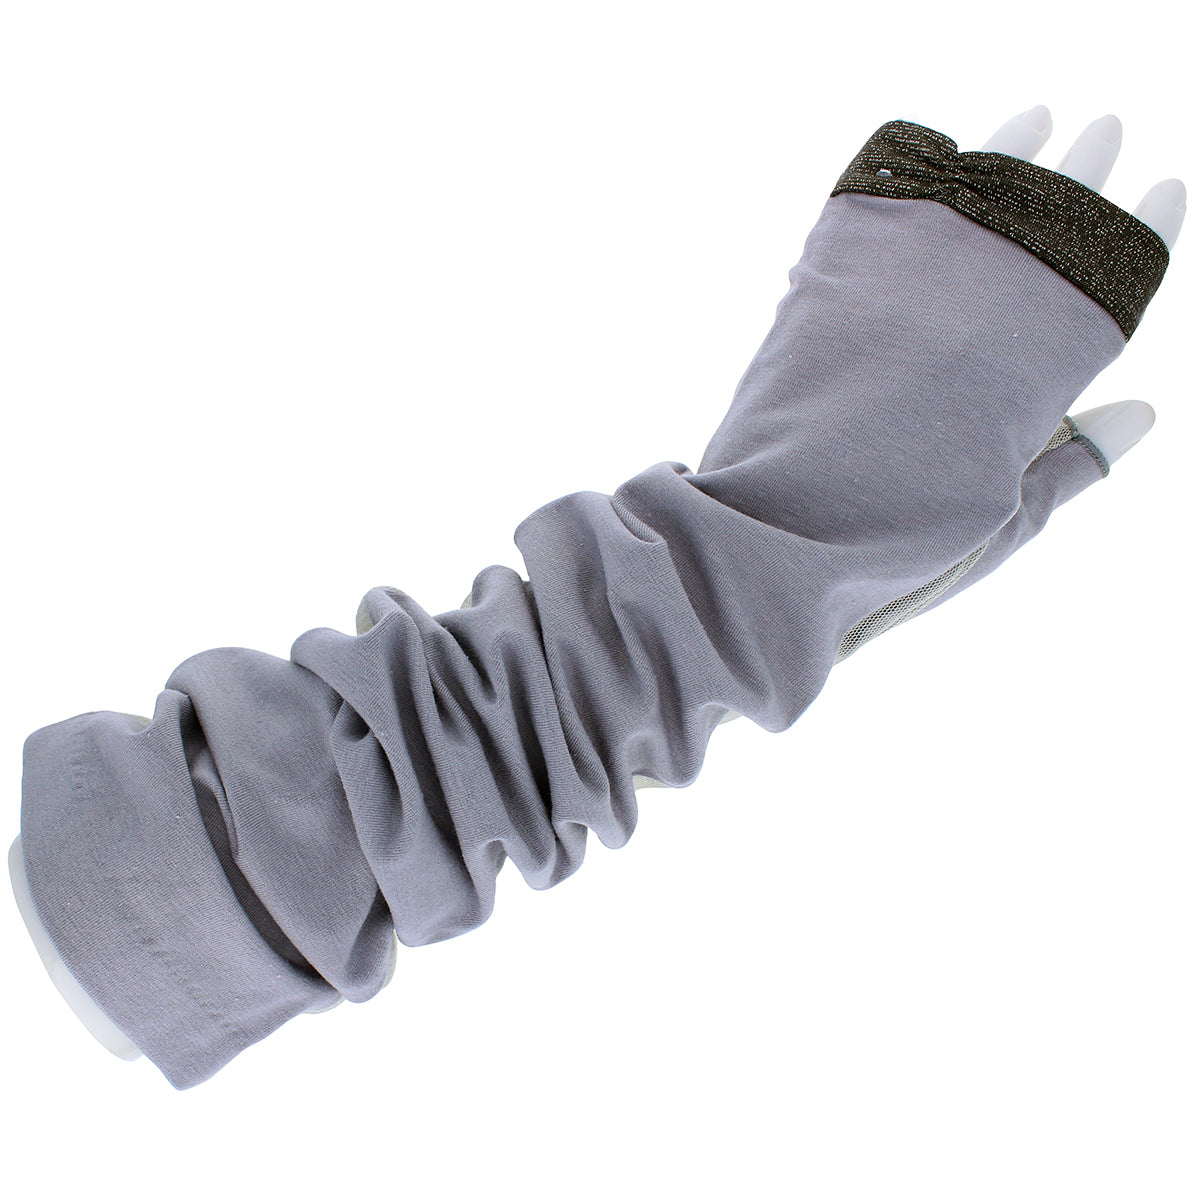 高遮蔽UPF50+婦人UV手袋 ロング丈 グレー